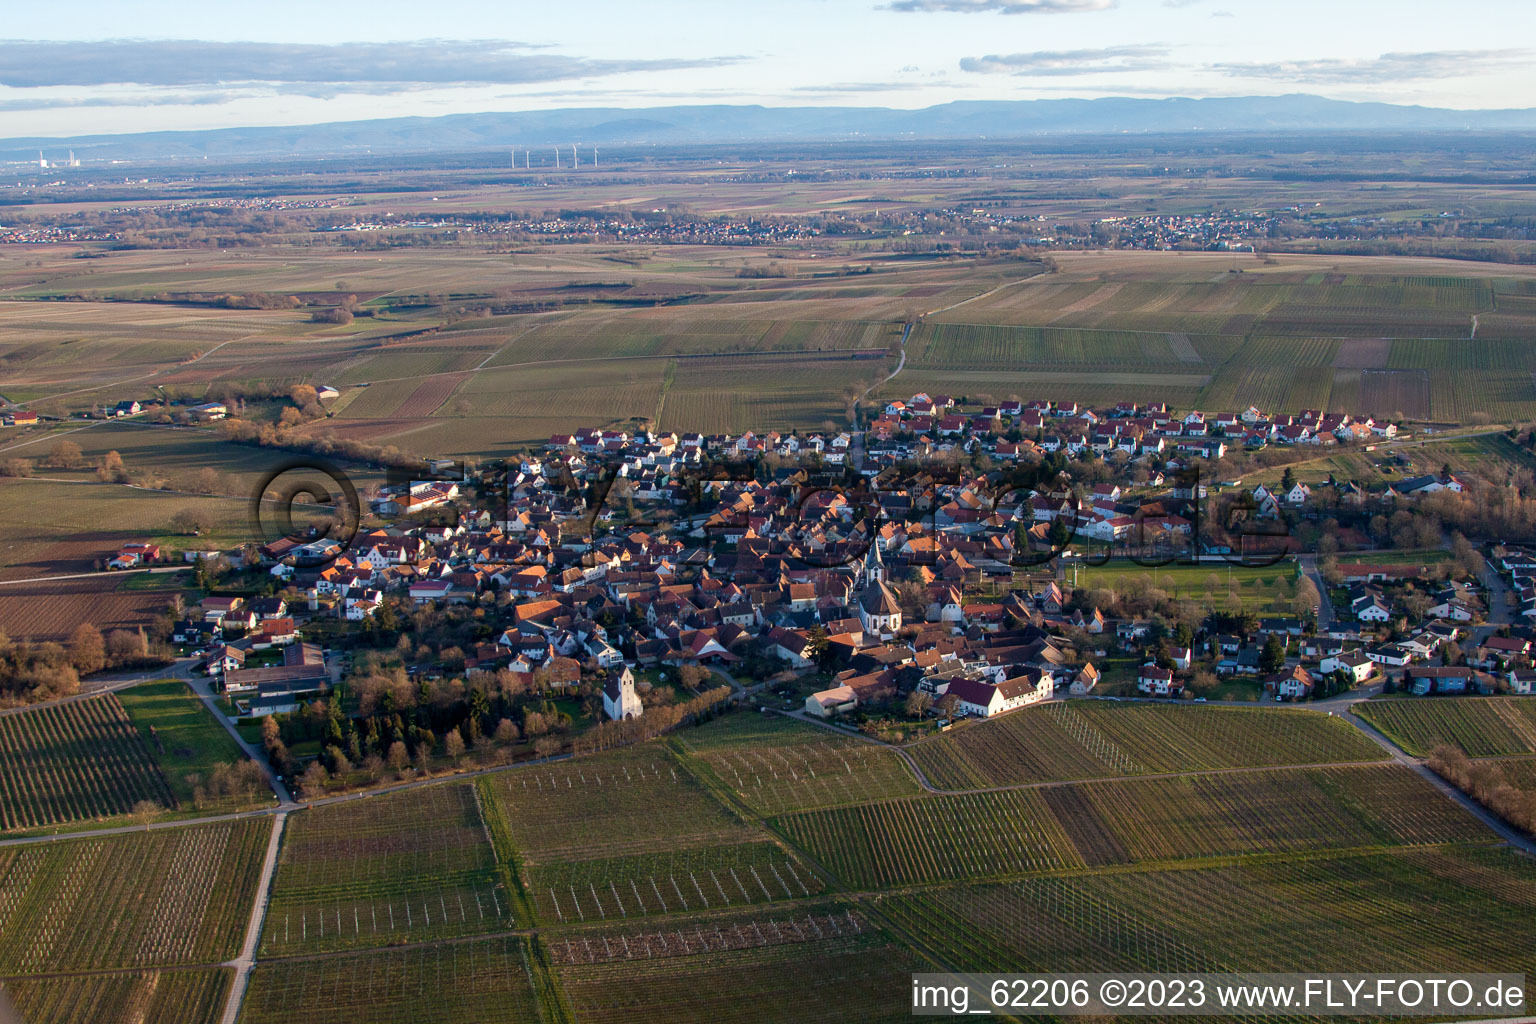 District Mörzheim in Landau in der Pfalz in the state Rhineland-Palatinate, Germany from above